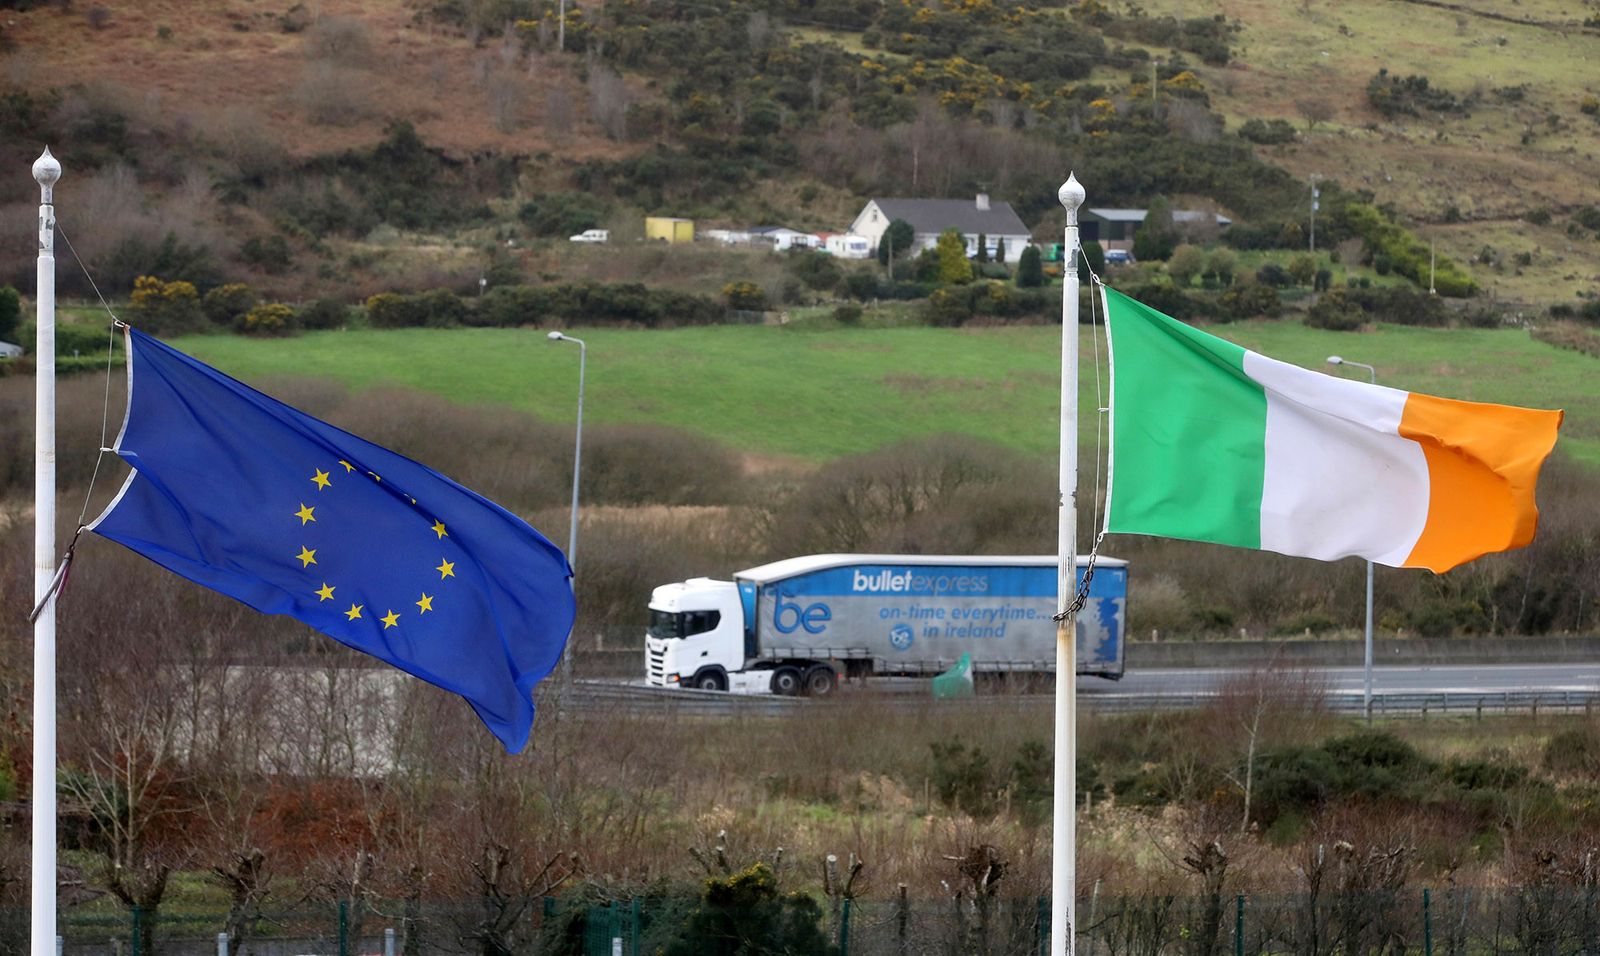 ايرلندا الشمالية تُبقي المملكة المتحدة وأوروبا في خلاف مستمر